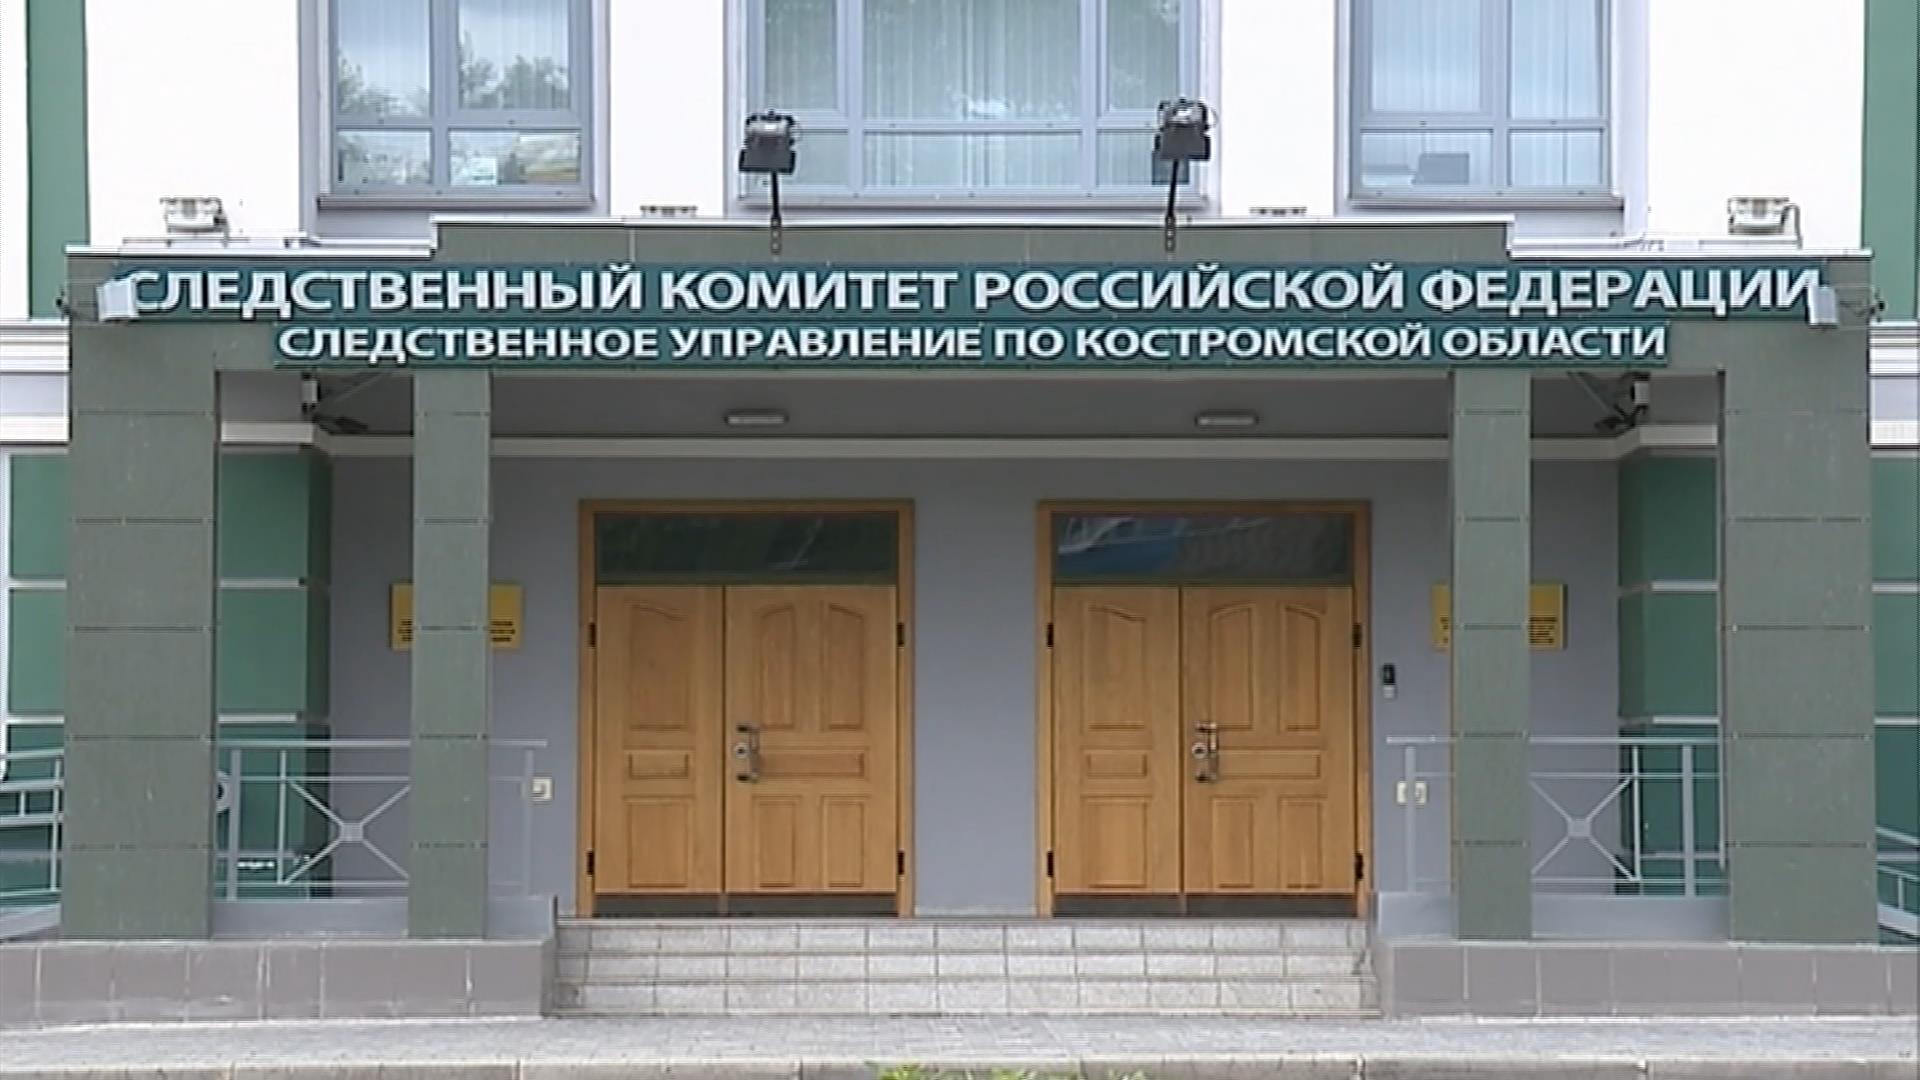 Следственный комитет начал проверку инцидента в Костромском кадетском корпусе